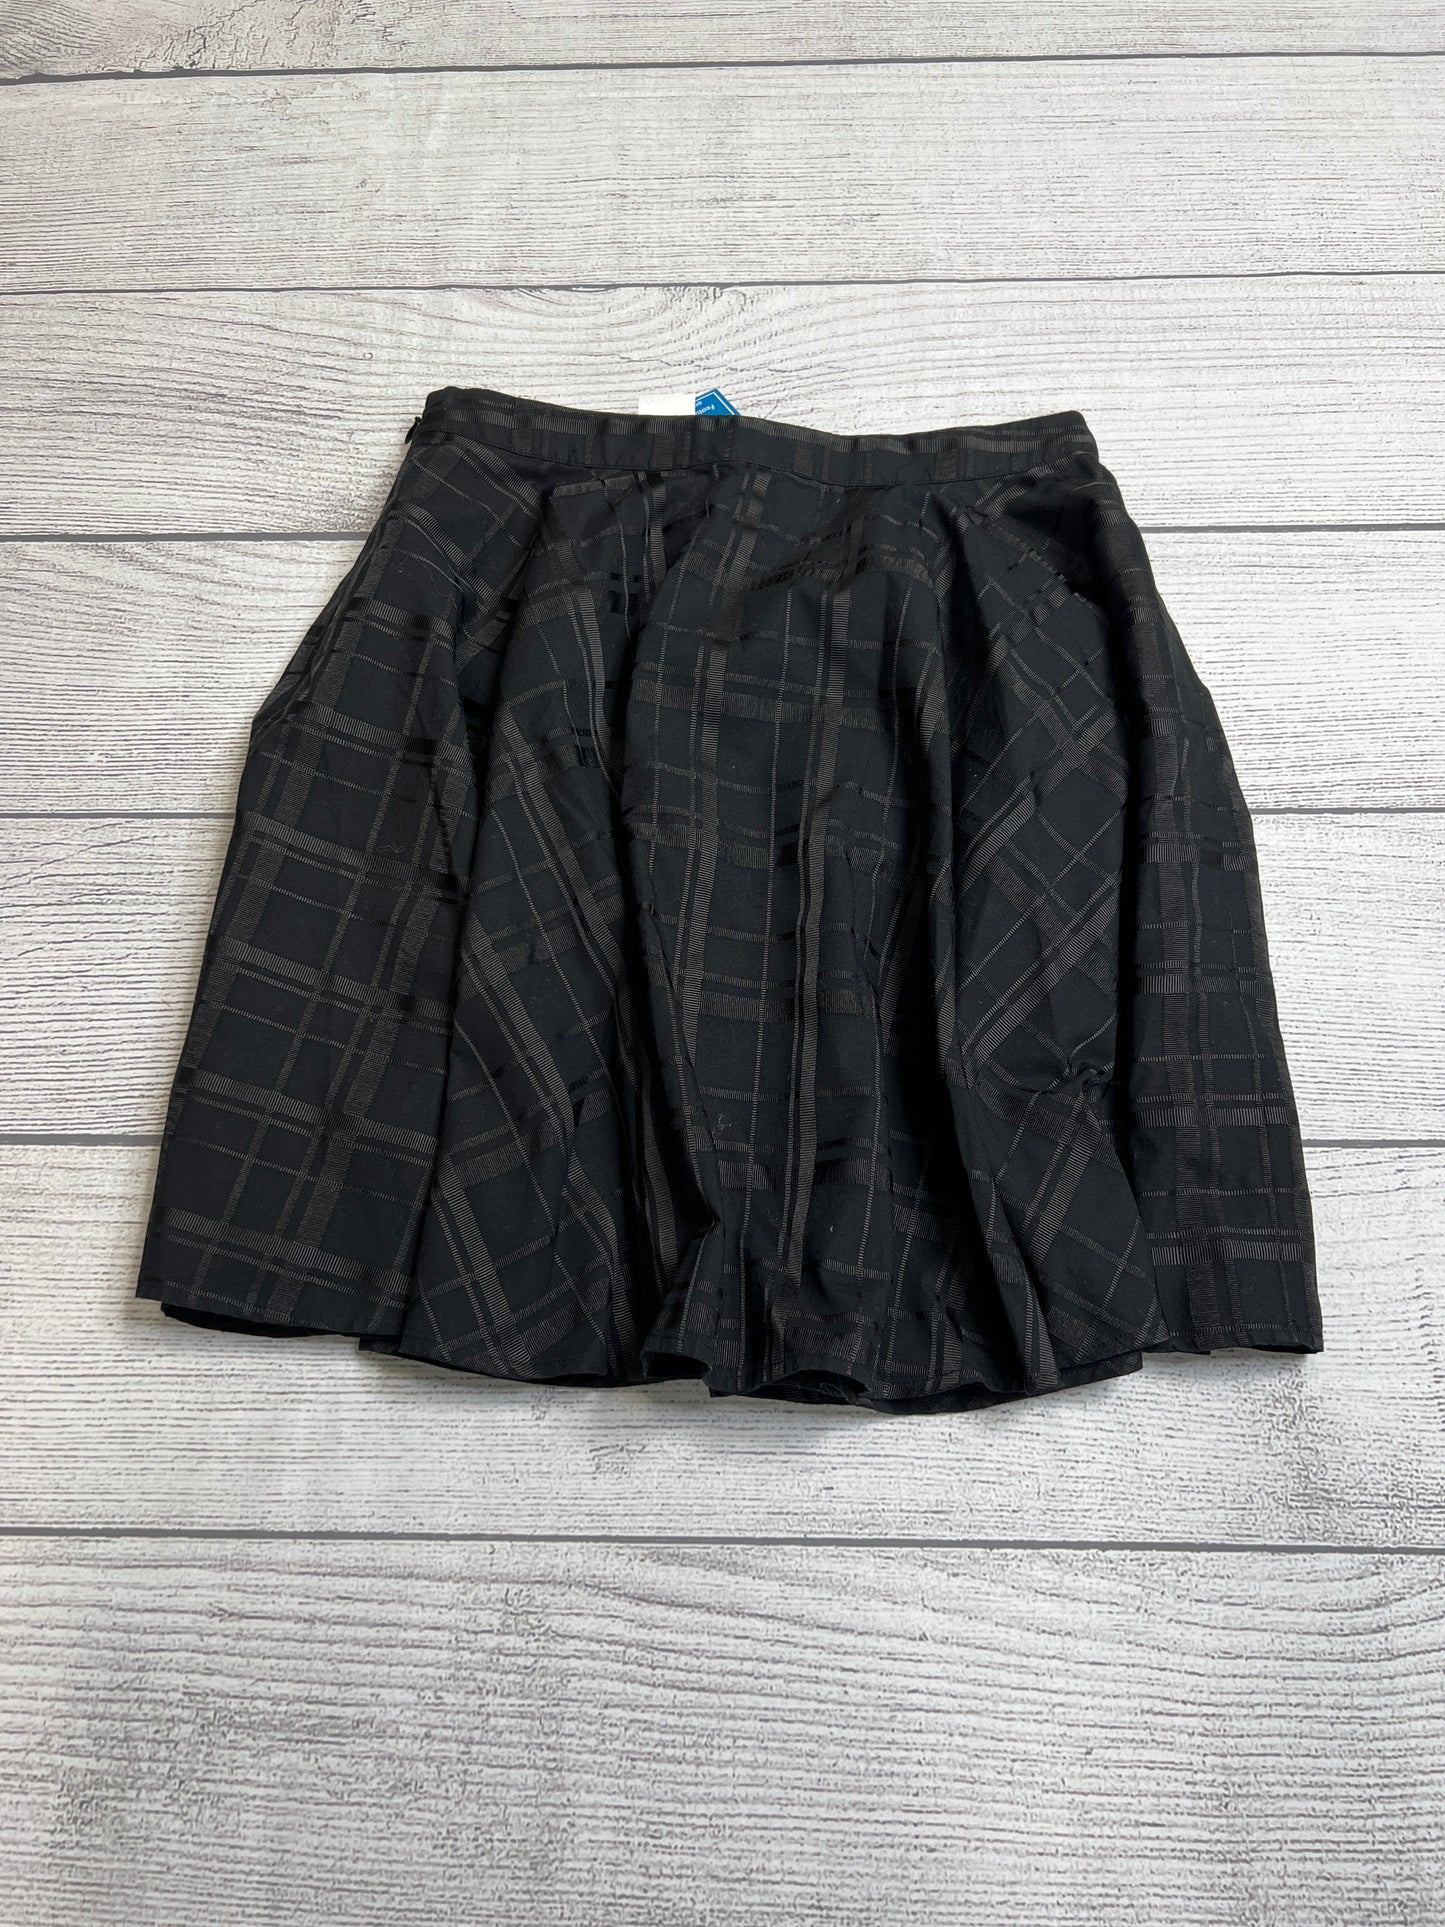 Skirt Mini & Short By Vineyard Vines  Size: S